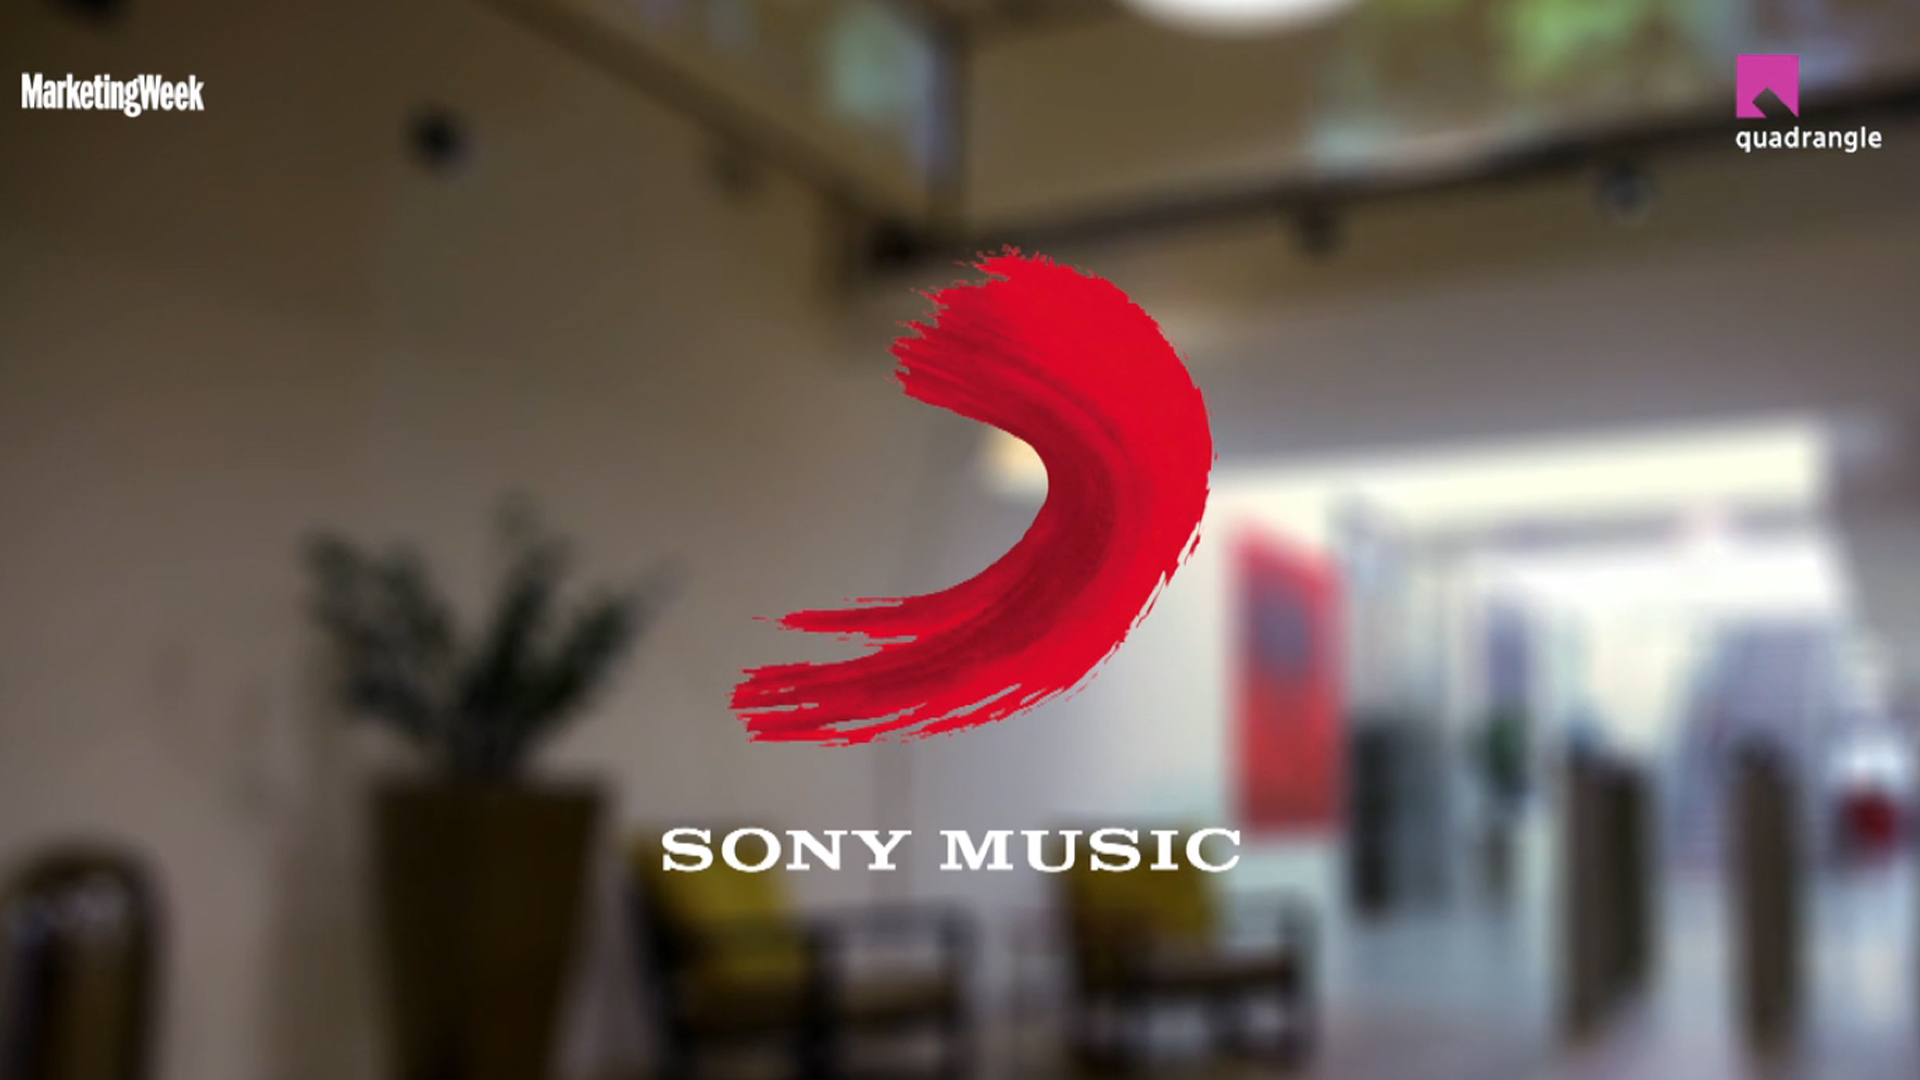 SONY MUSIC UK – SEGMENTATION